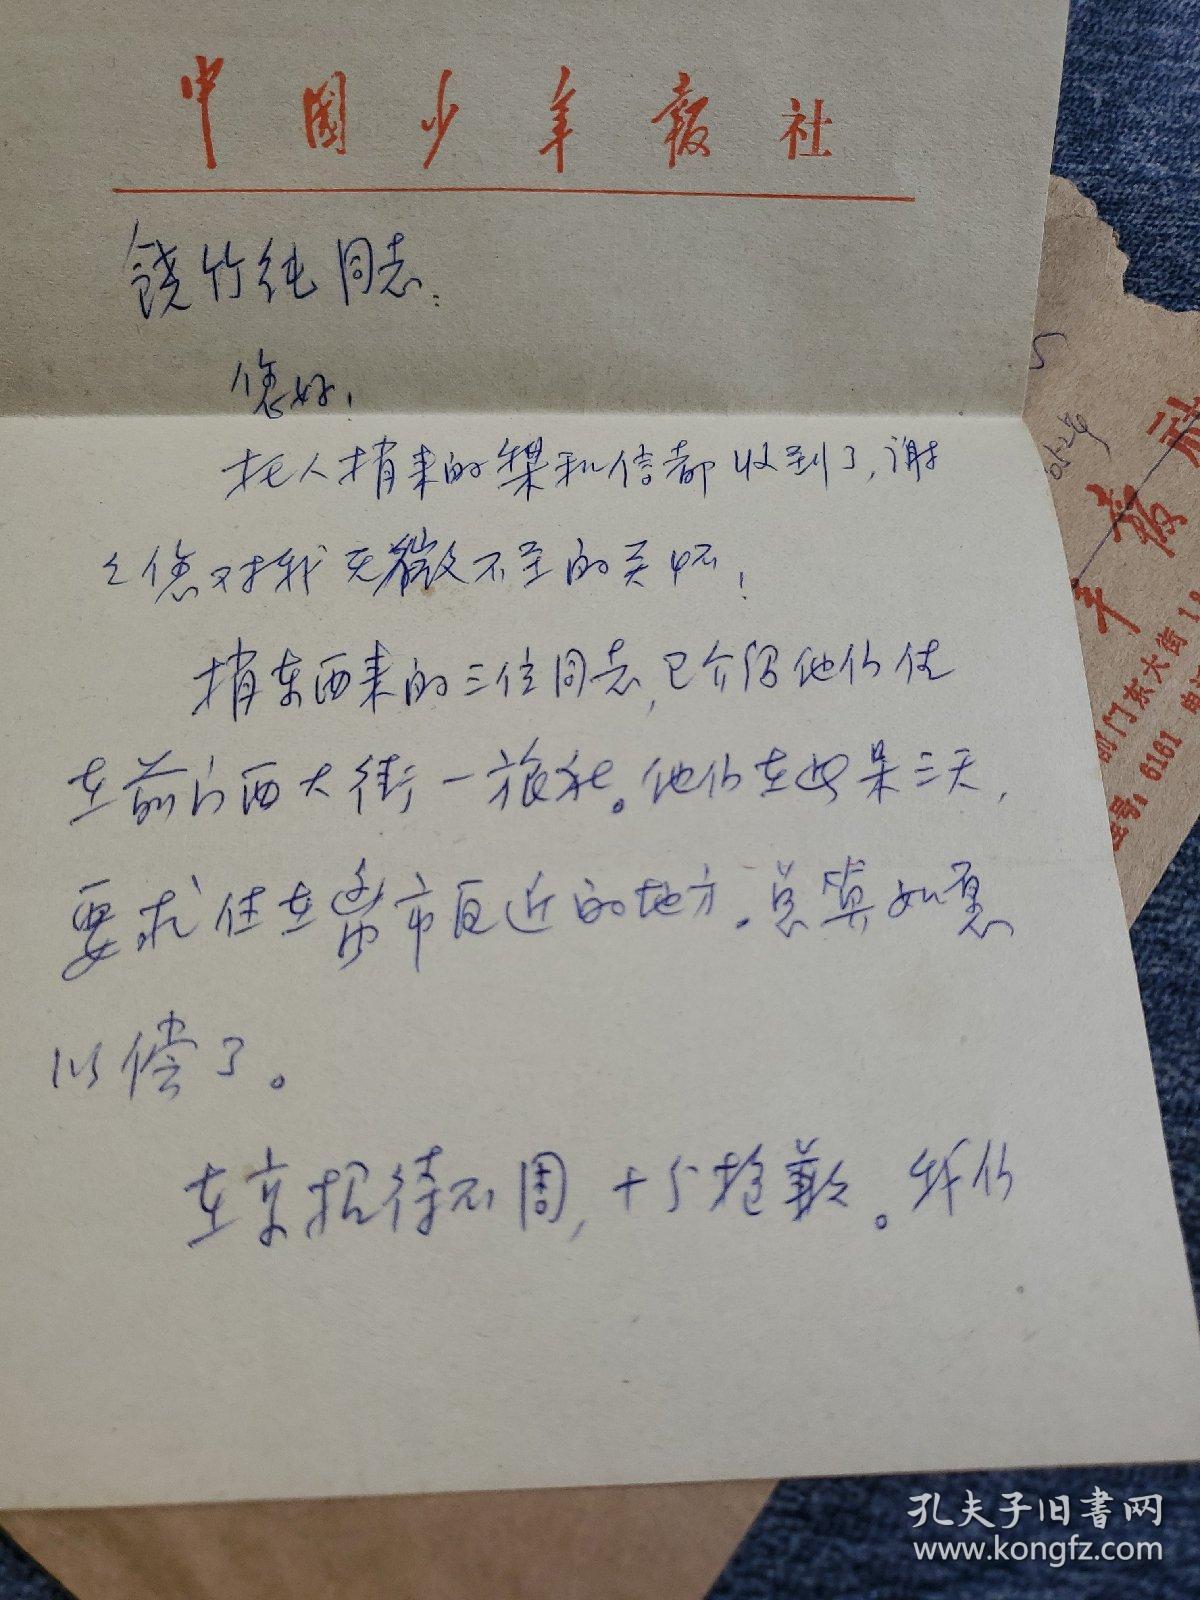 《中国少年报》 高级编辑 姜达雅信札2小页 带封